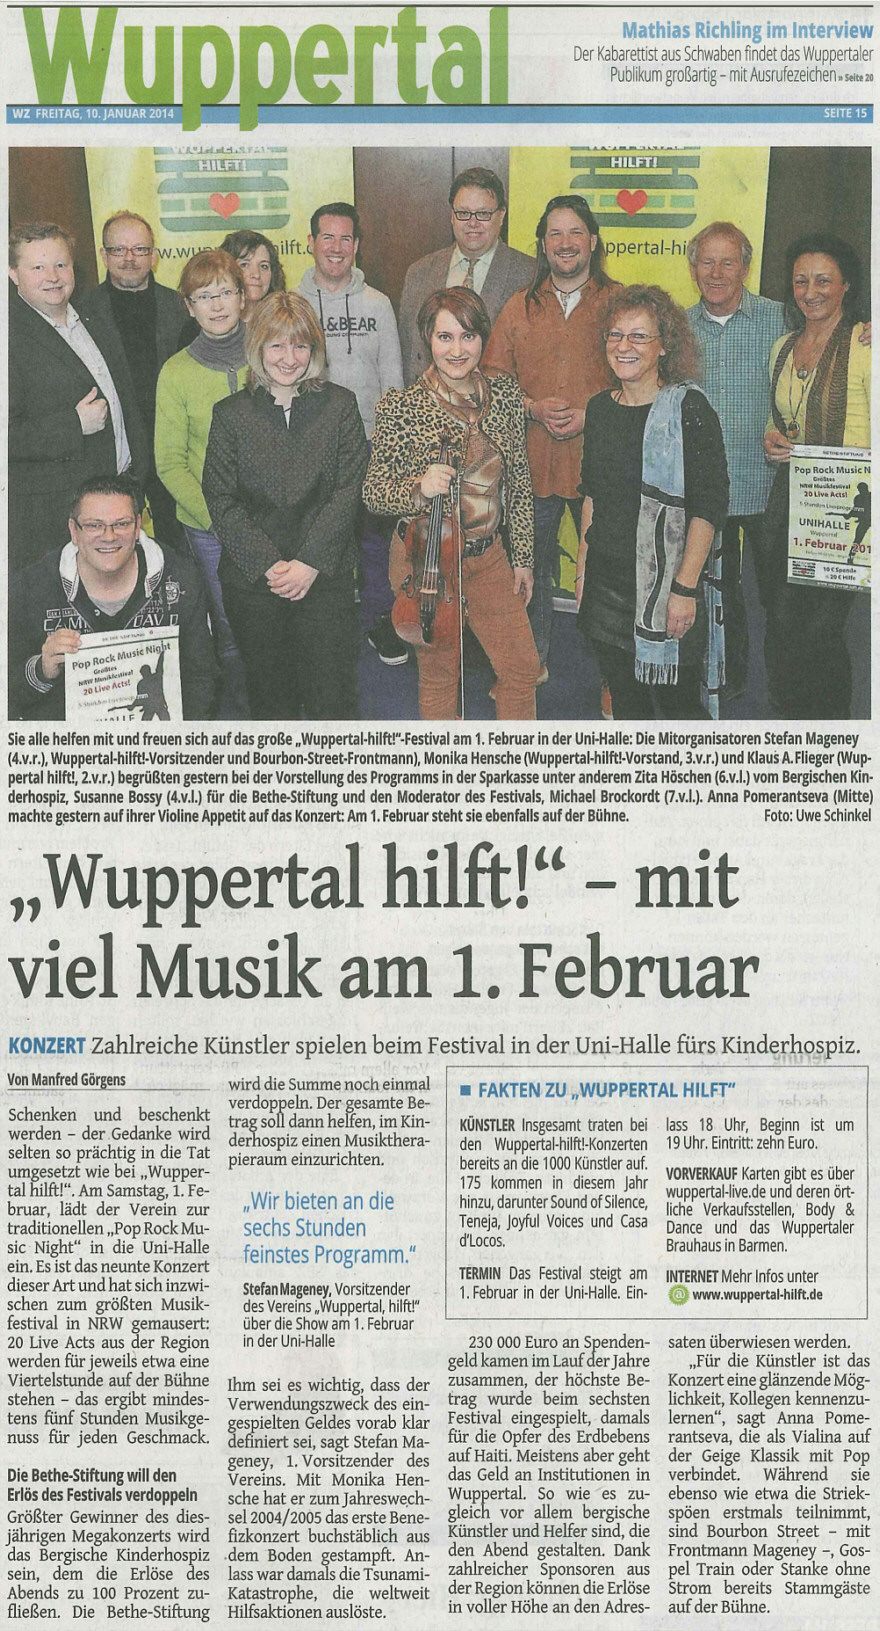 Quelle: Westdeutsche Zeitung (WZ, Ausgabe vom 10.01.2014) - Wuppertal hilft!